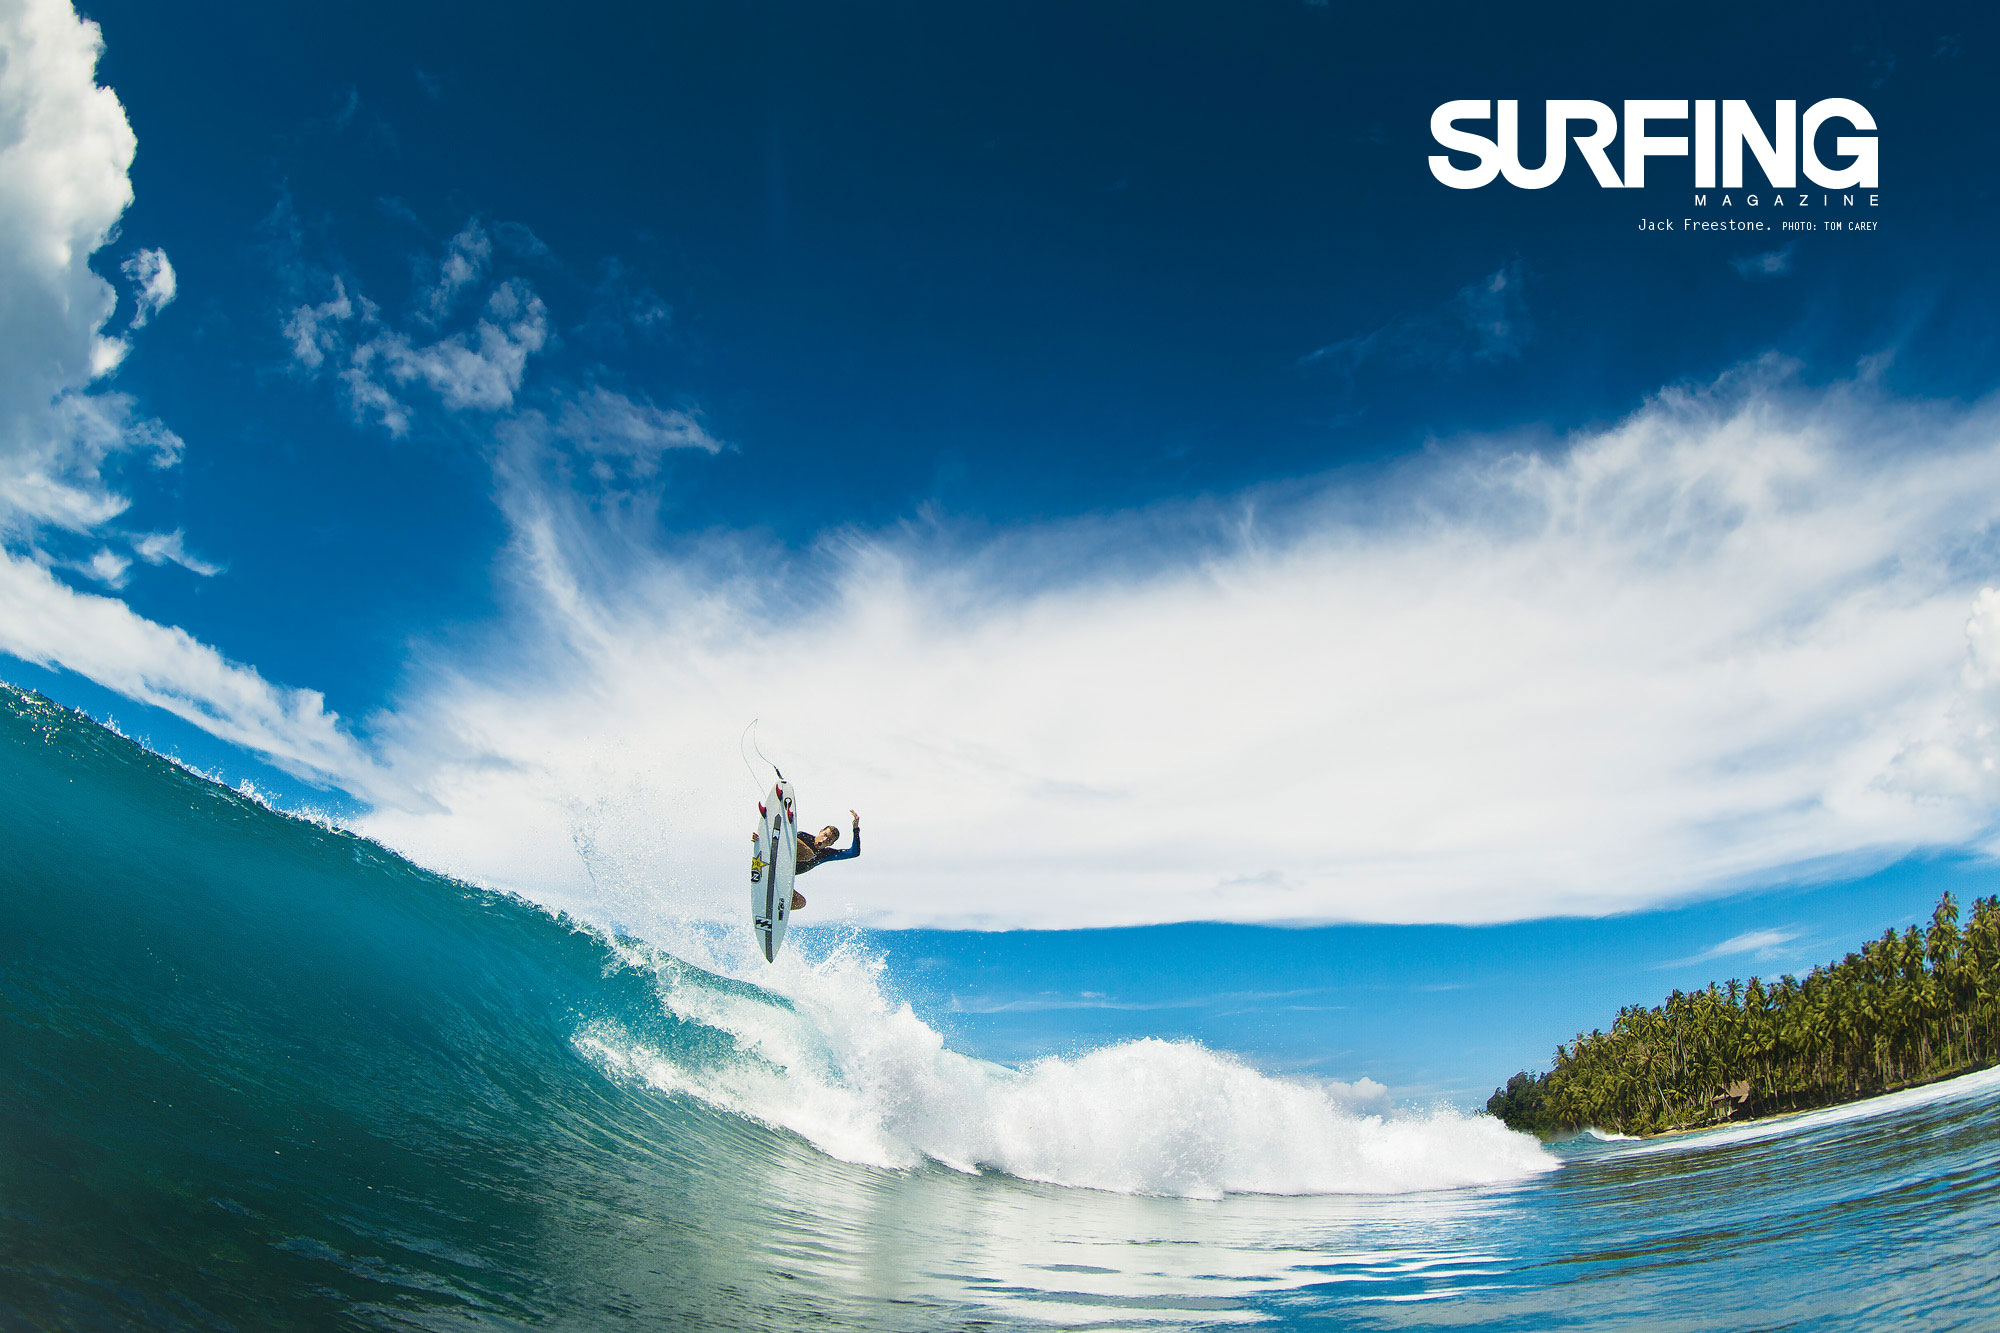 Surfer Wallpaper